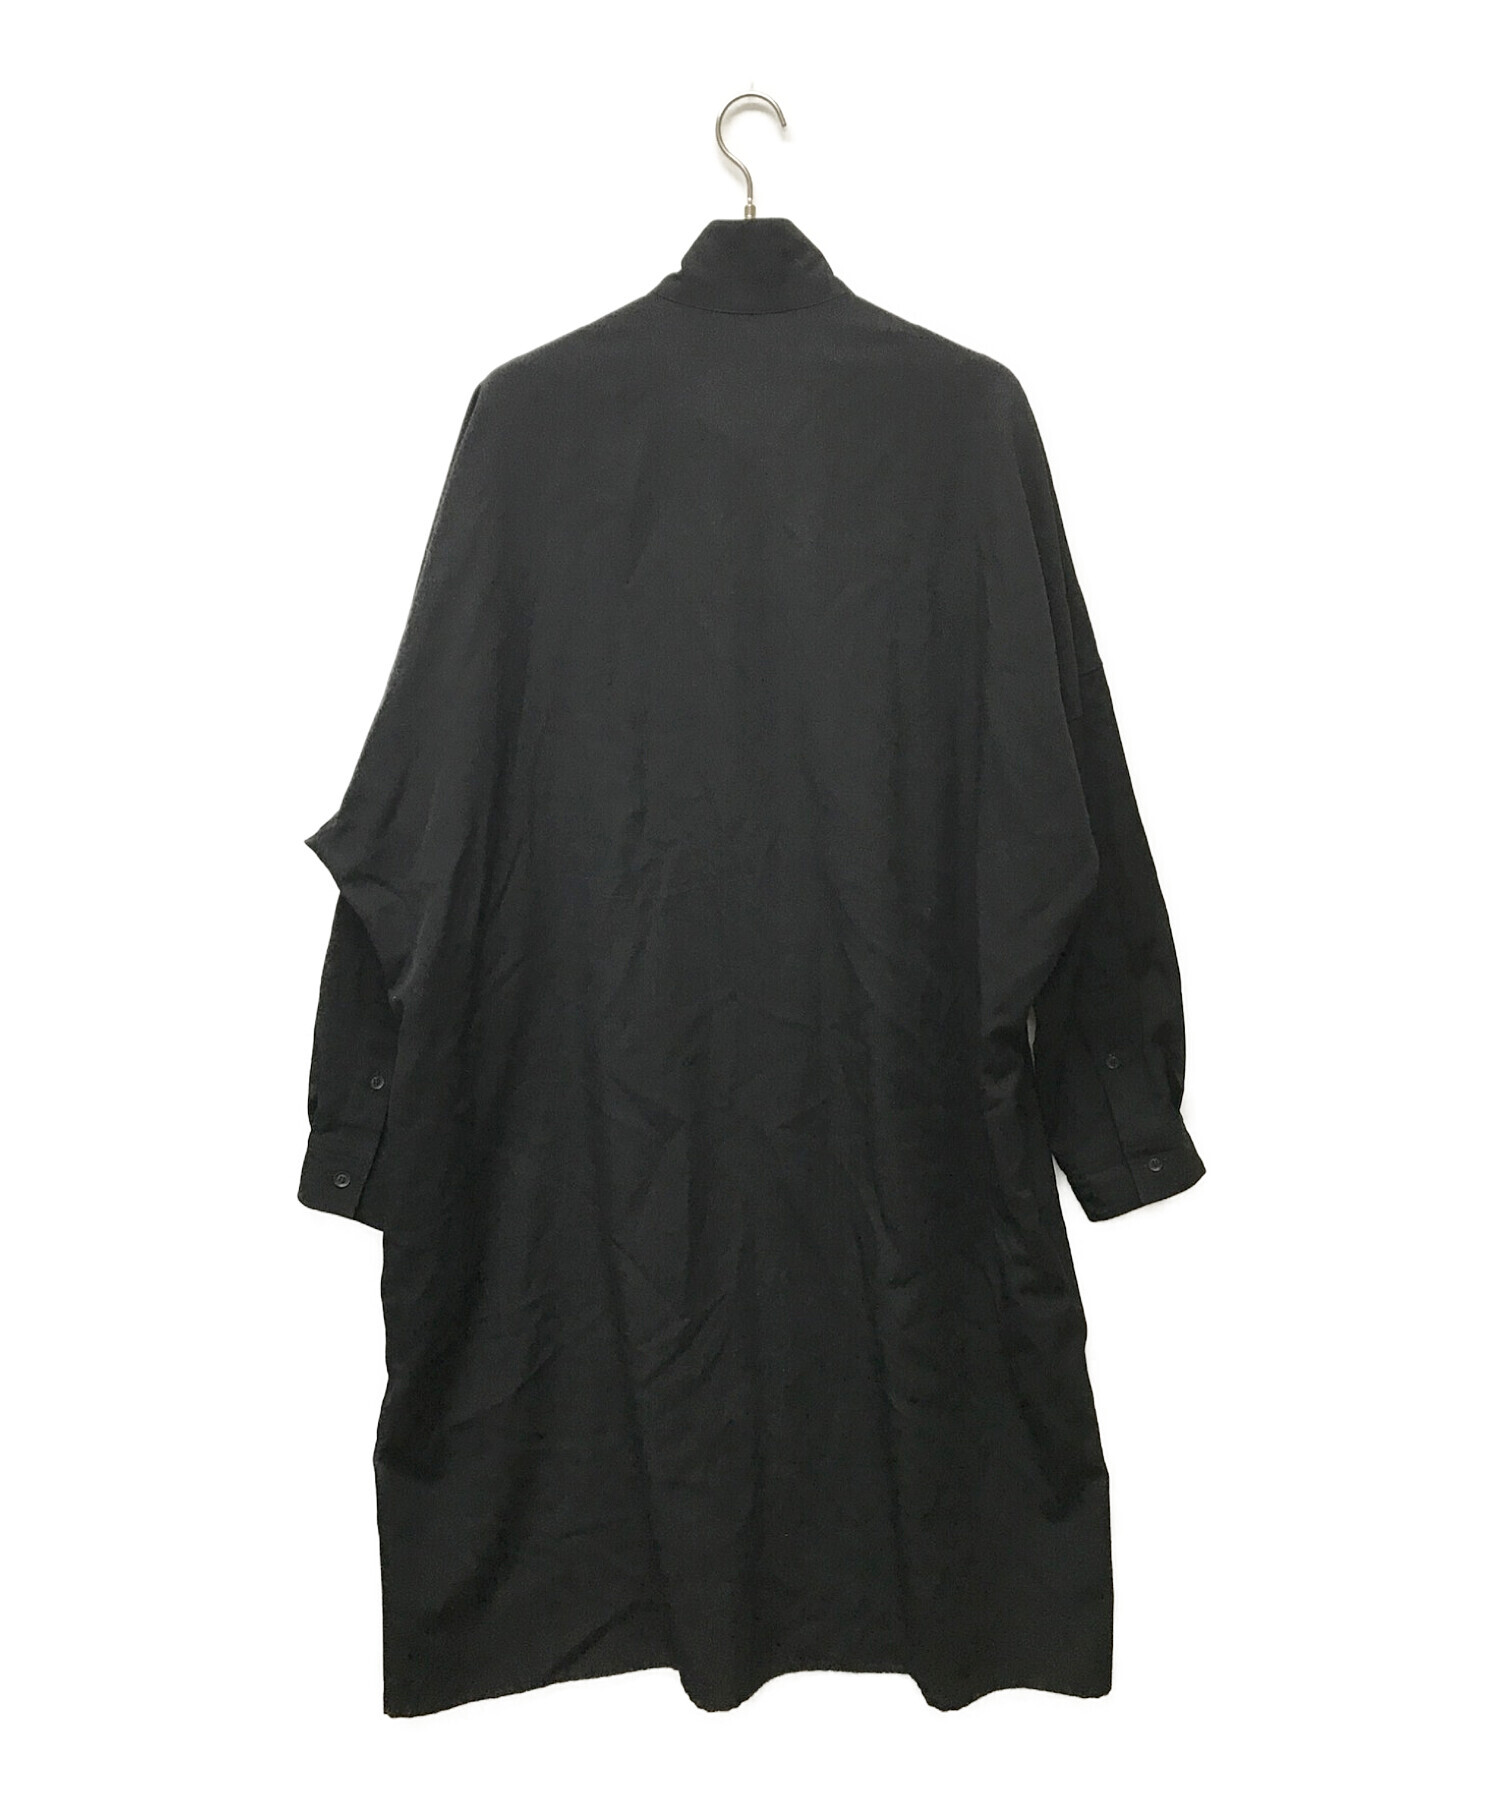 Yohji Yamamoto pour homme (ヨウジヤマモト プールオム) ウールギャバジンスタンドカラーロングシャツ ブラック サイズ:3